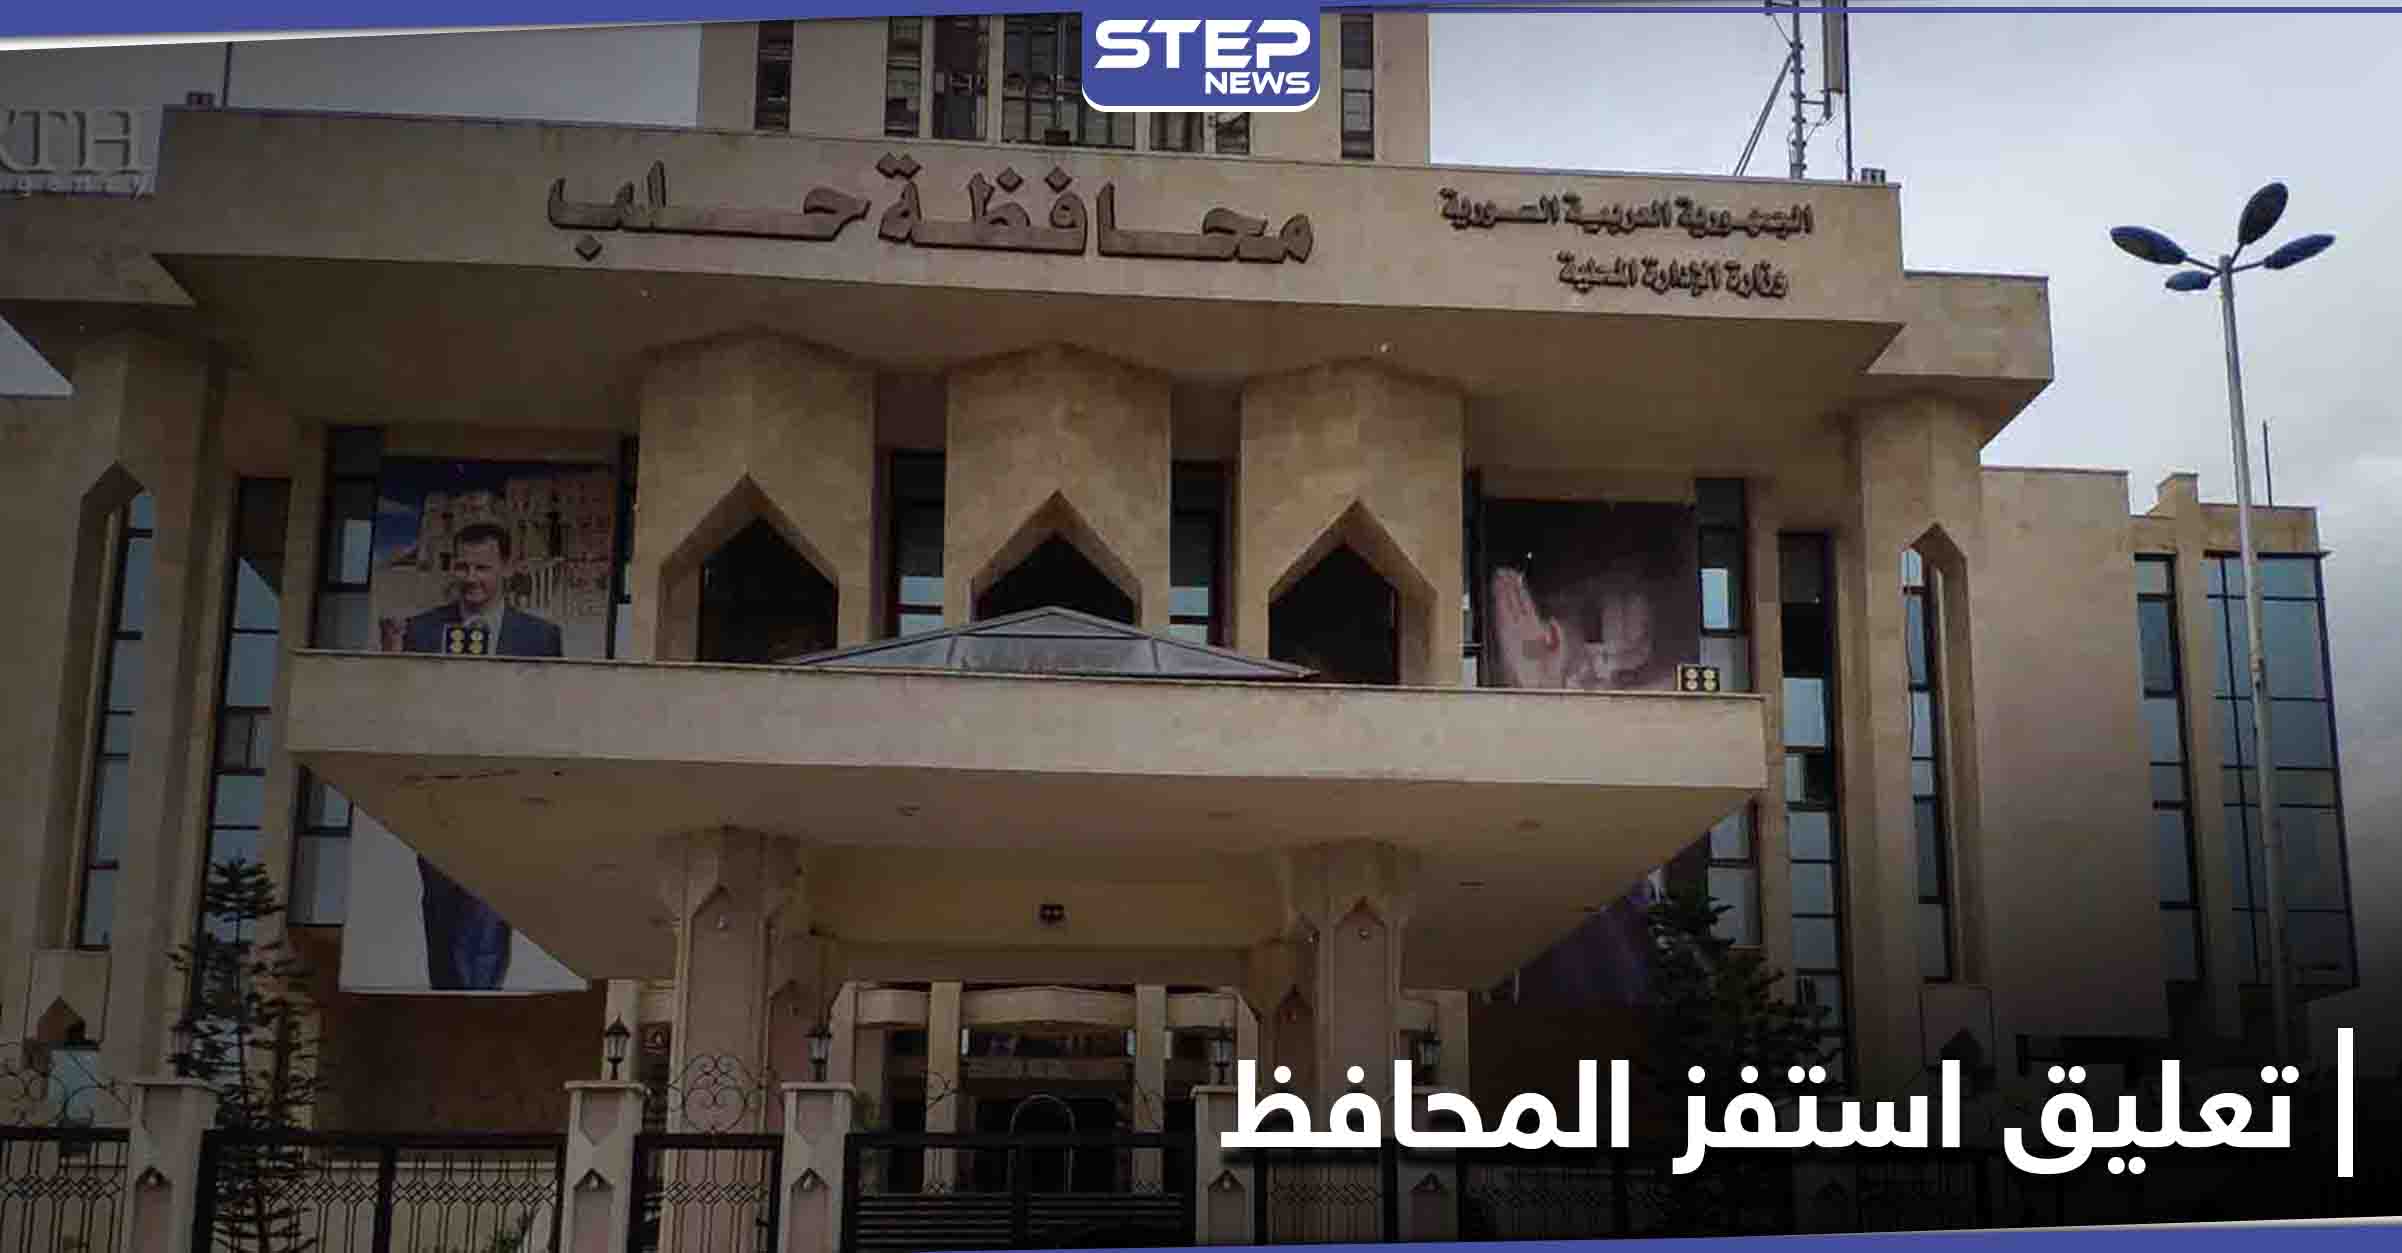 "عقبال محافظ حلب".. تعليق على فيسبوك تسبب بنقل معلمة إلى مكان بعيد